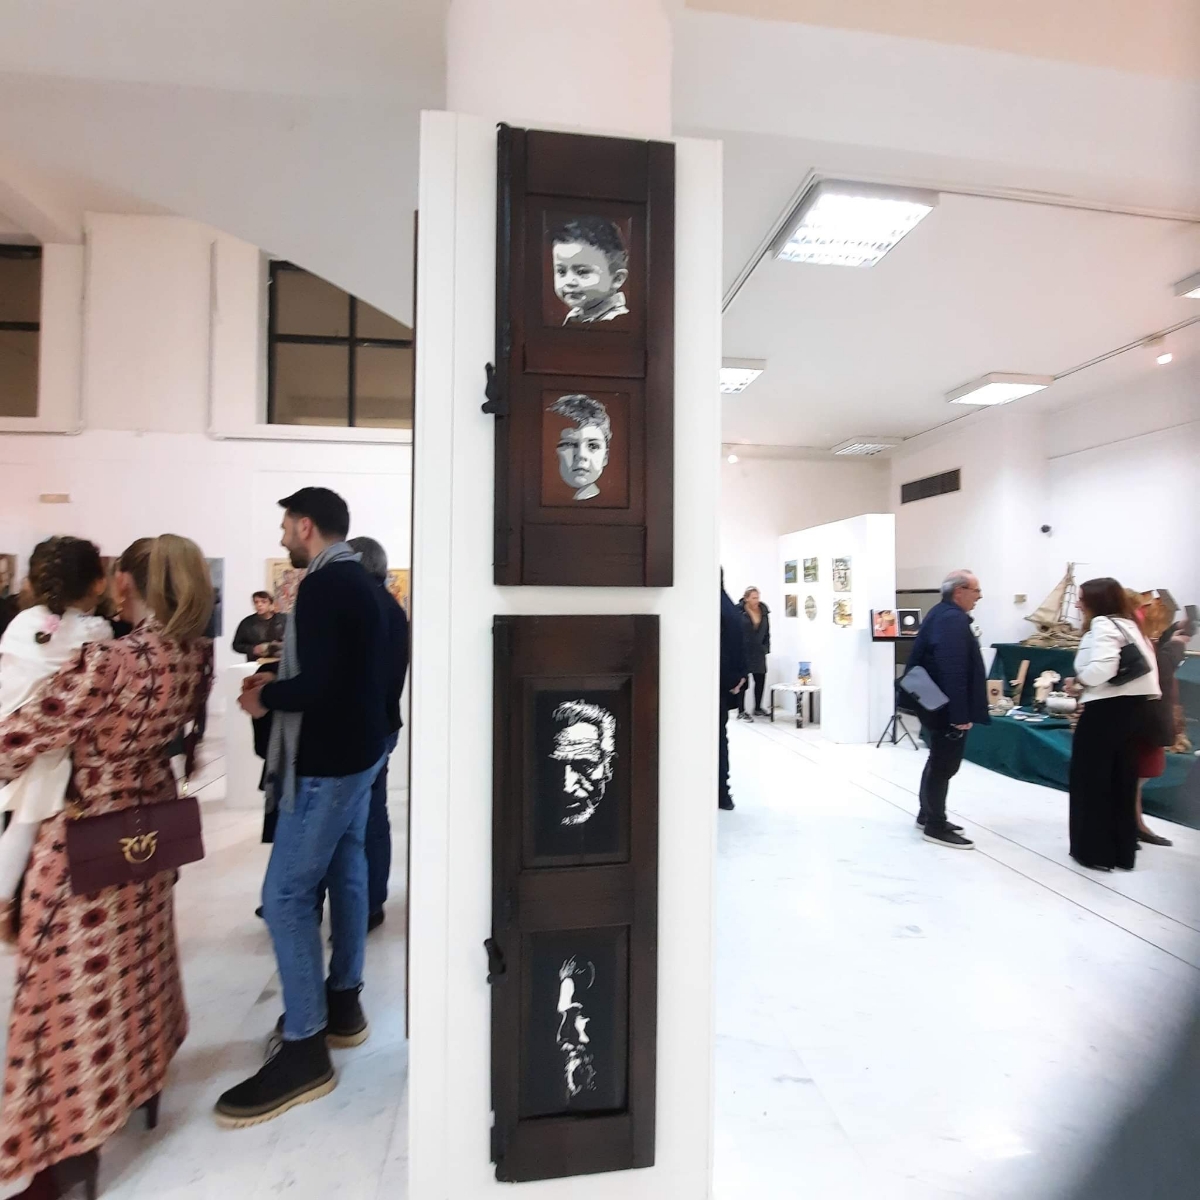 Βόλος: Εγκαινιάστηκε η ομαδική έκθεση “… Δίκην Τέχνης” με έργα δικηγόρων/δικαστικών υπαλλήλων